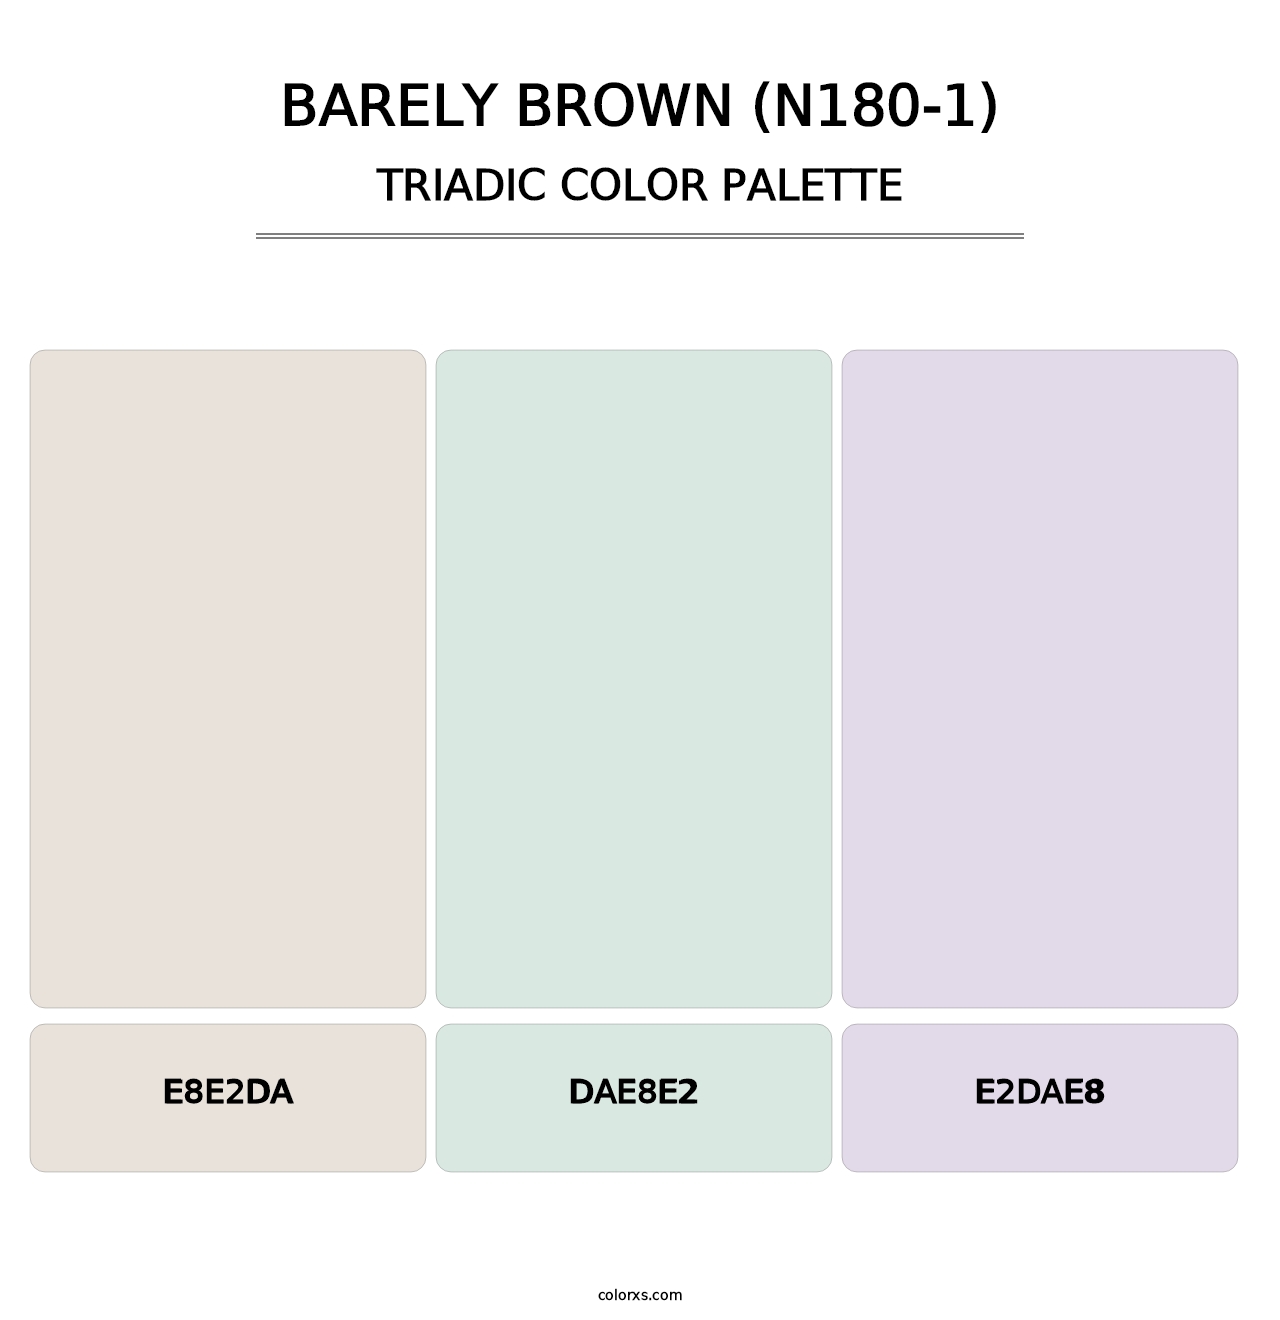 Barely Brown (N180-1) - Triadic Color Palette